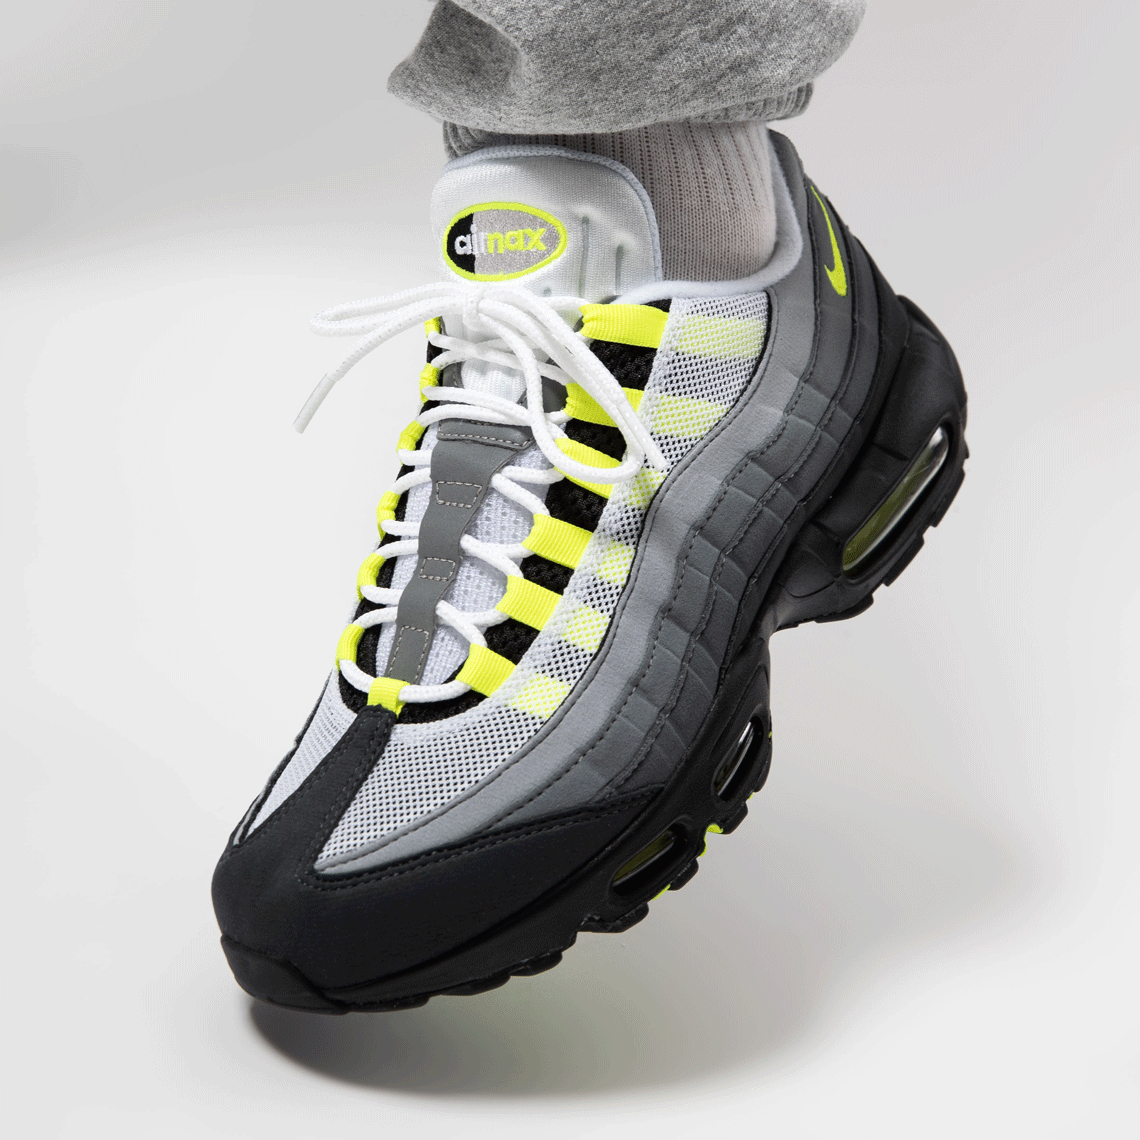 Nike Air Max 95 Ct1689 001 Neon 02